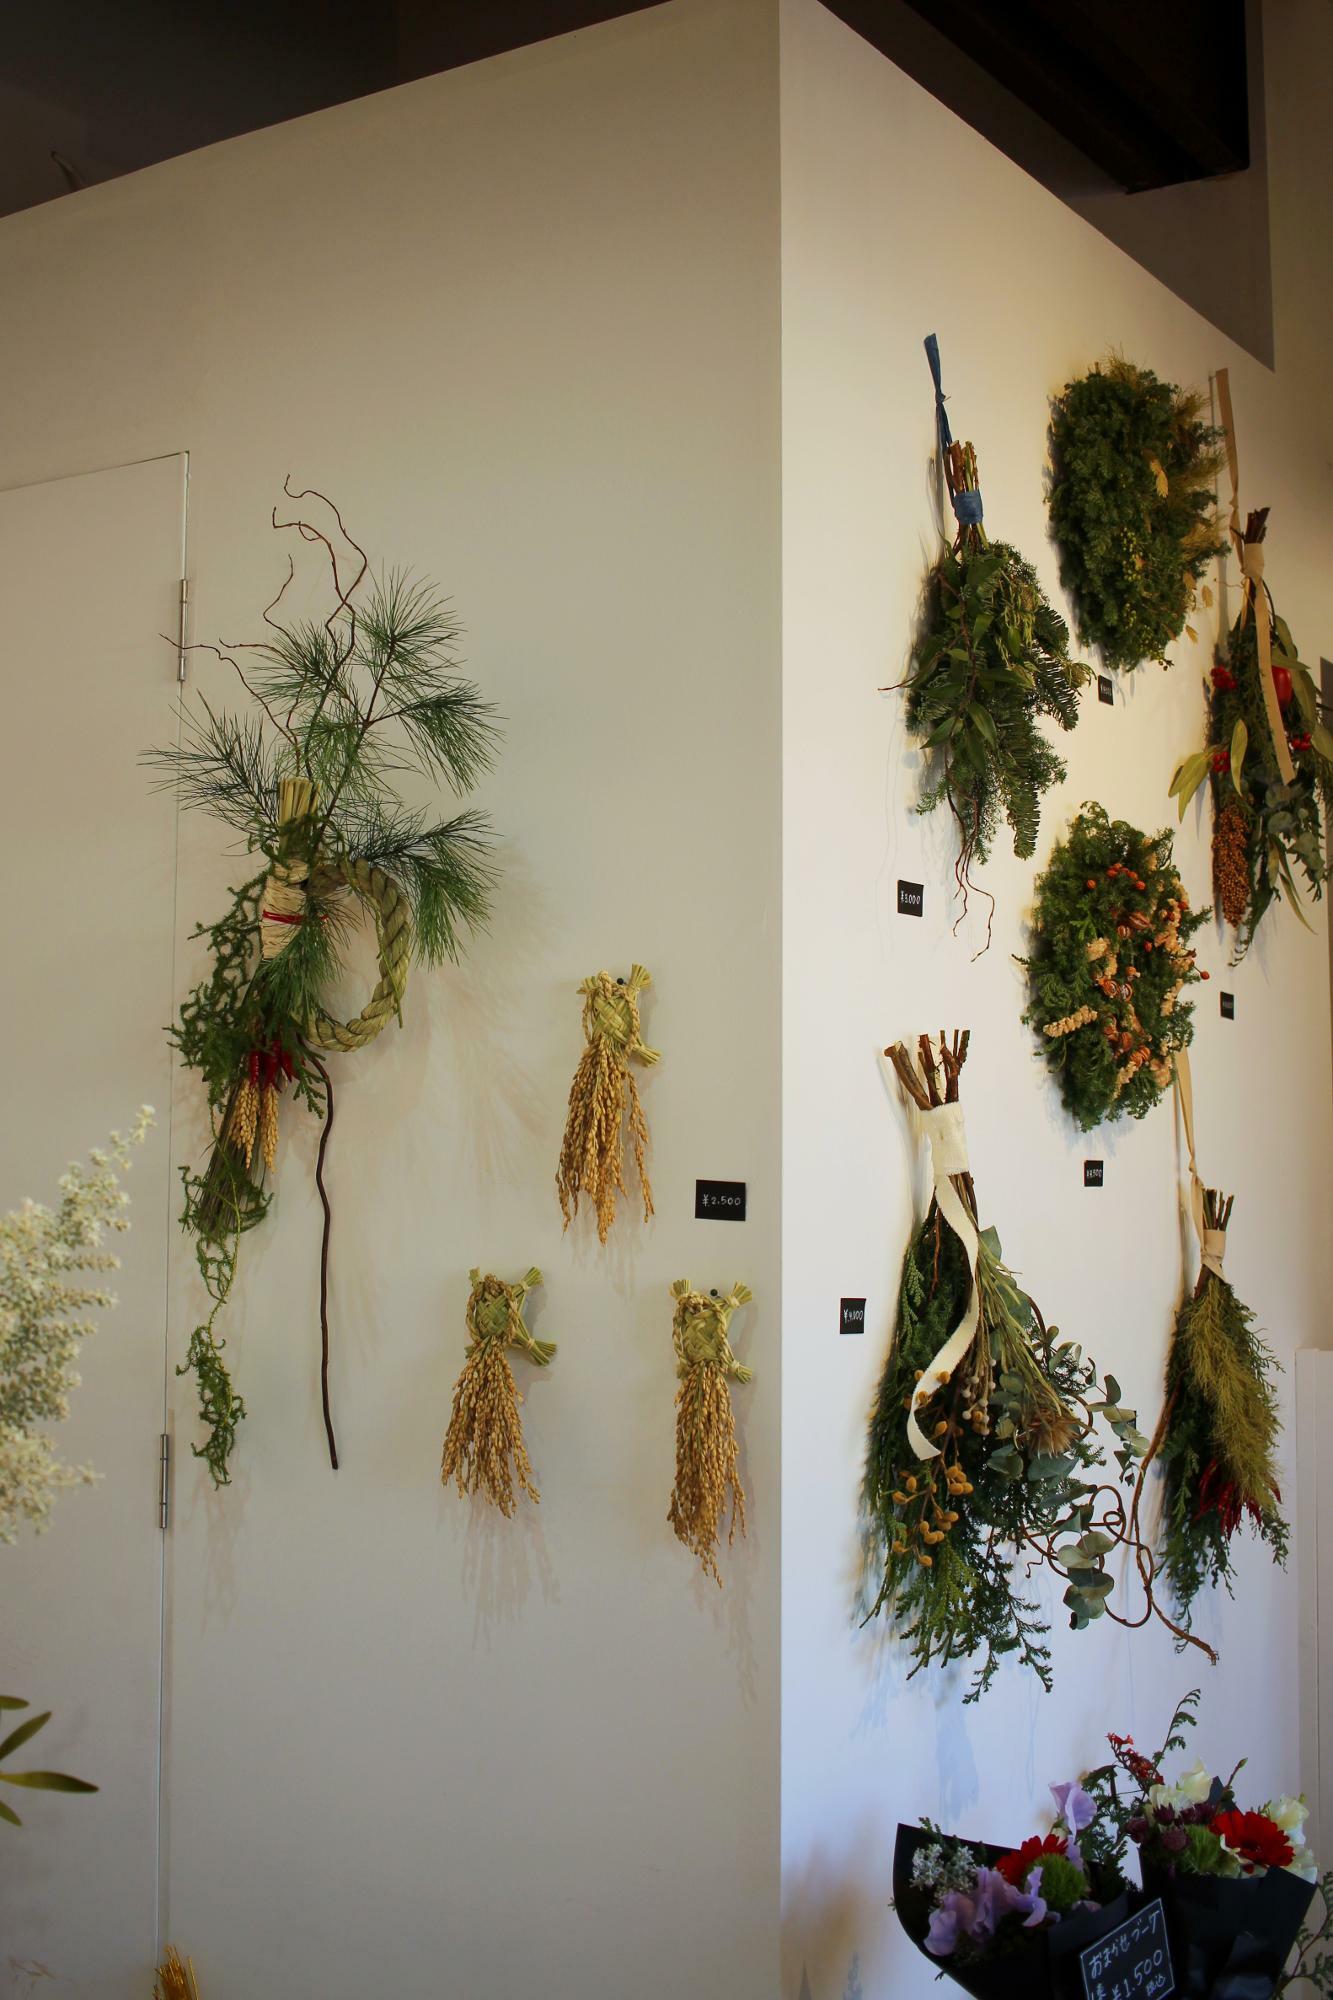 店内の壁に飾られたお飾りと稲藁で編まれた亀。リースやスワッグも。